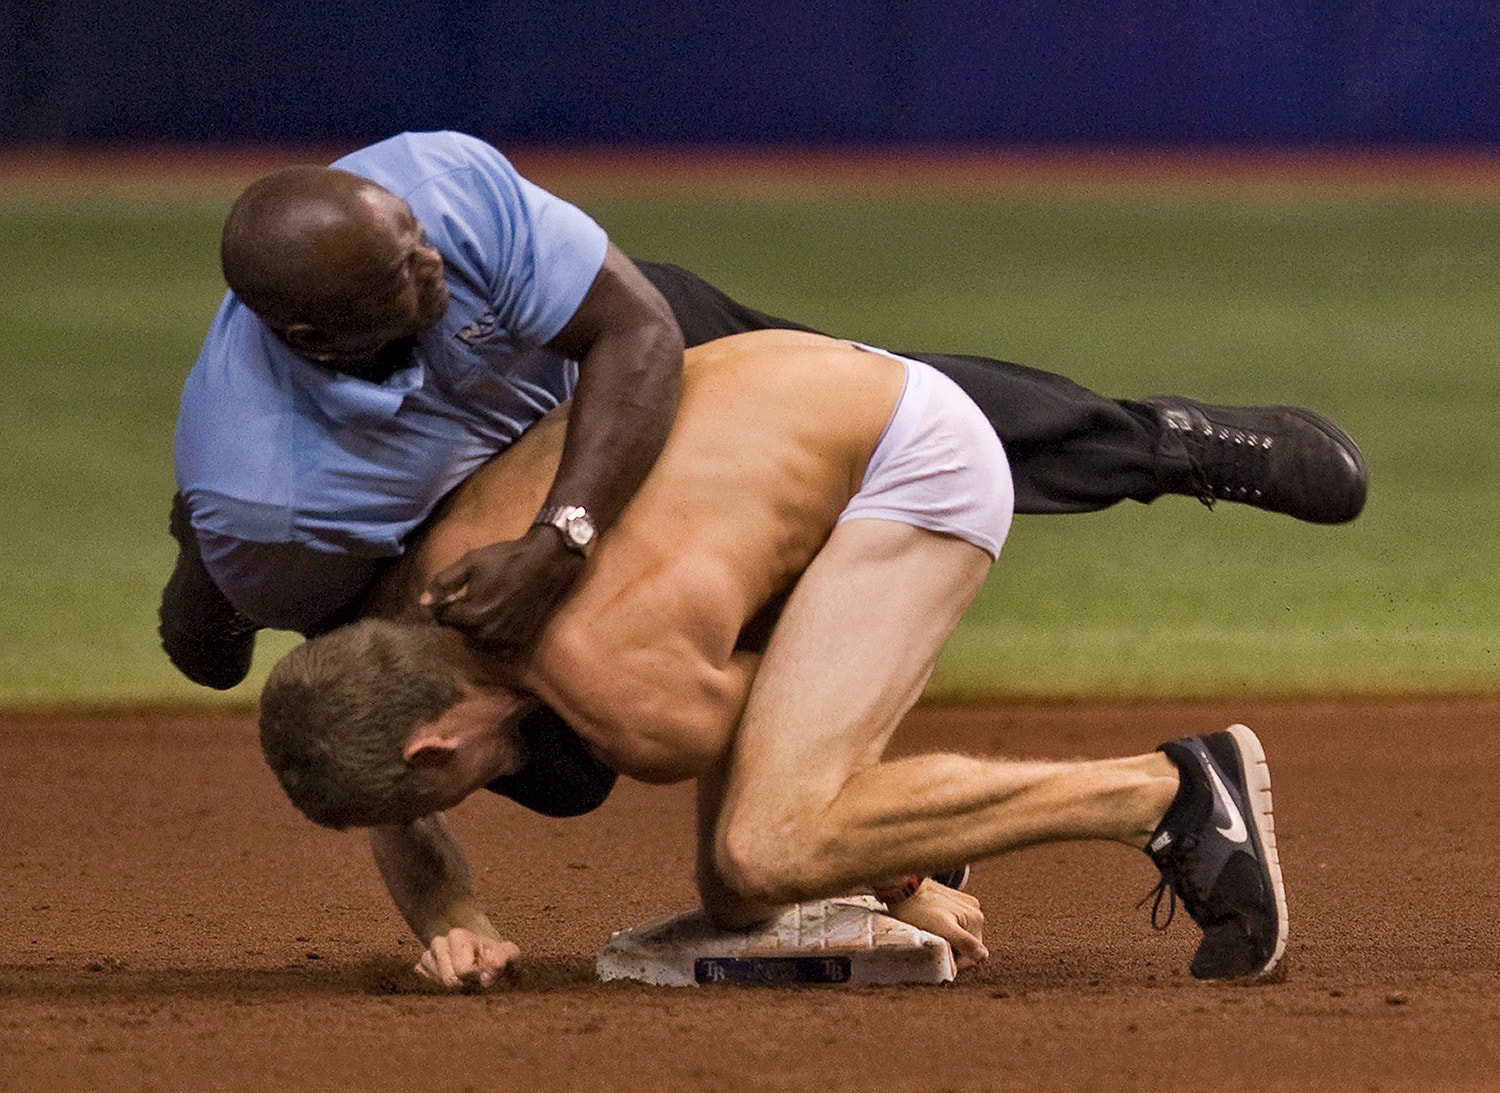  O invasor tentou roubar a segunda base do campo de basebol em 2013 /Steve Nesius Reuters 